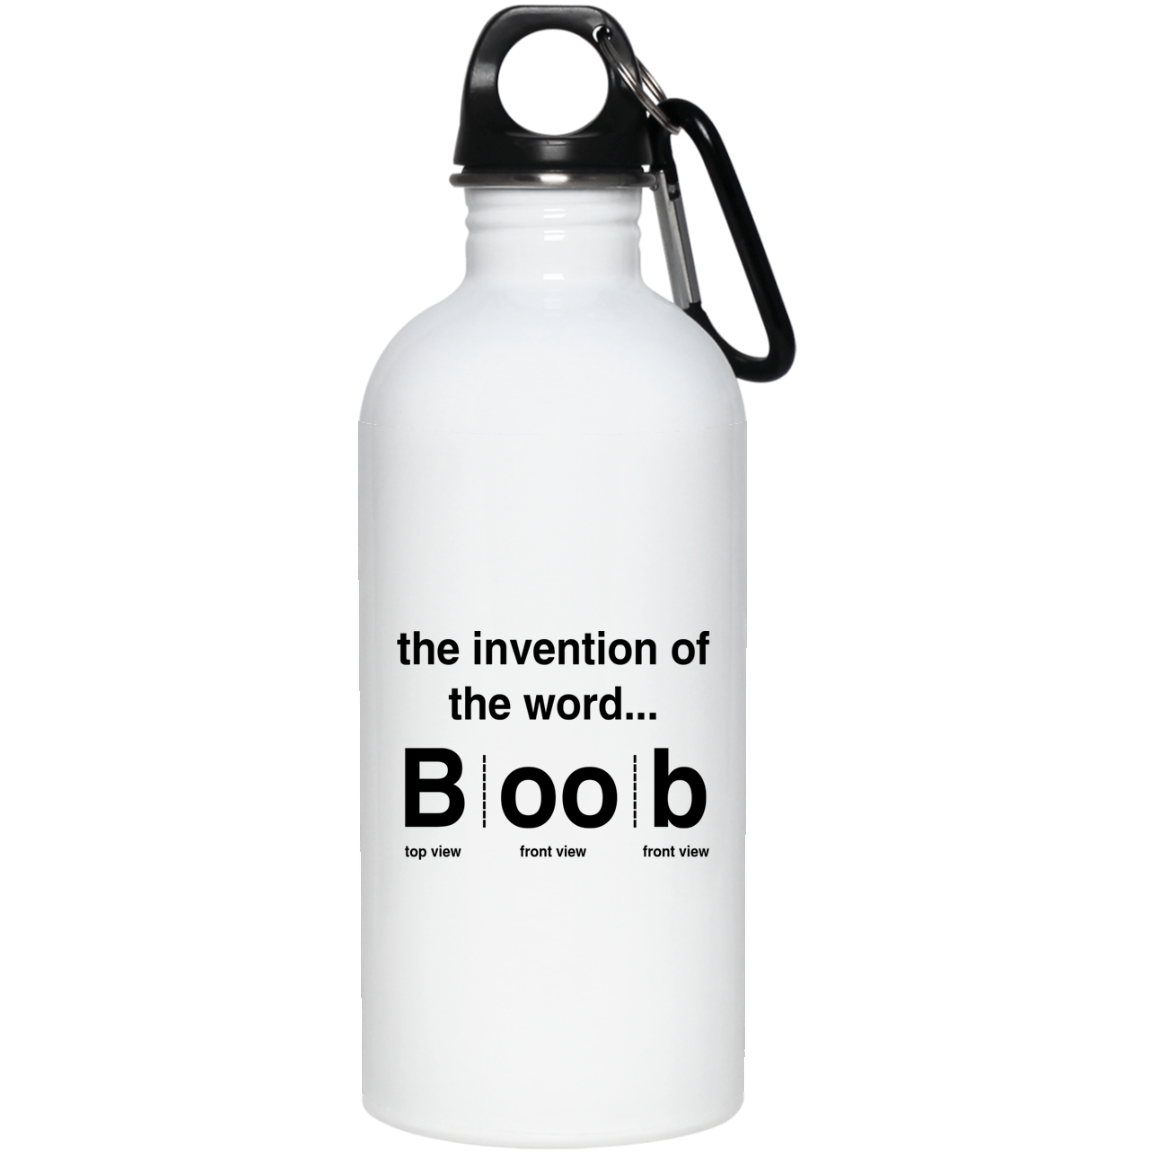 The Invention Of The Word Boob Mug, Coffee Mug, Travel Mug - Q